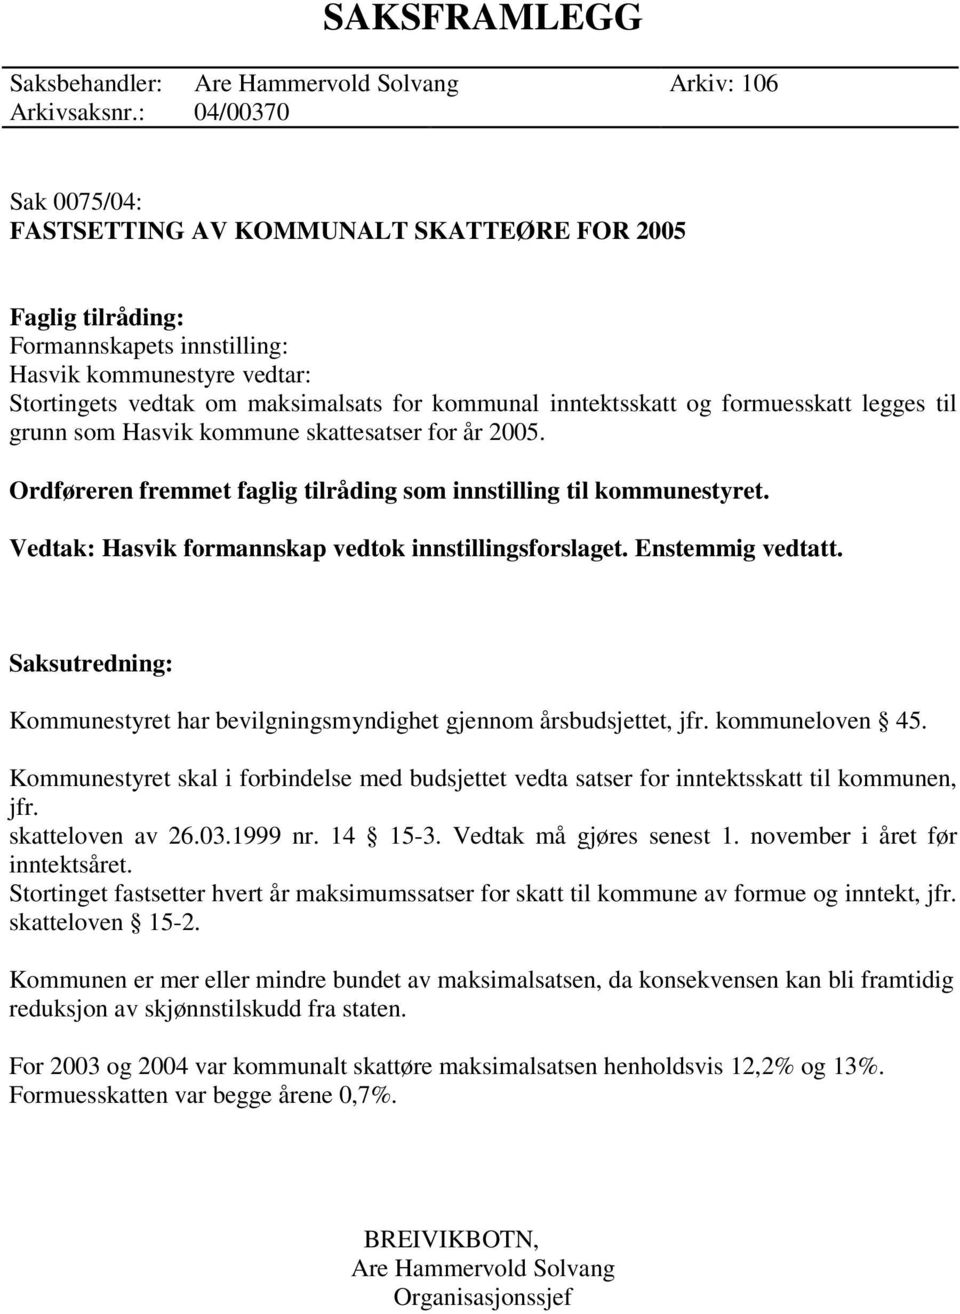 inntektsskatt og formuesskatt legges til grunn som Hasvik kommune skattesatser for år 2005. Ordføreren fremmet faglig tilråding som innstilling til kommunestyret.